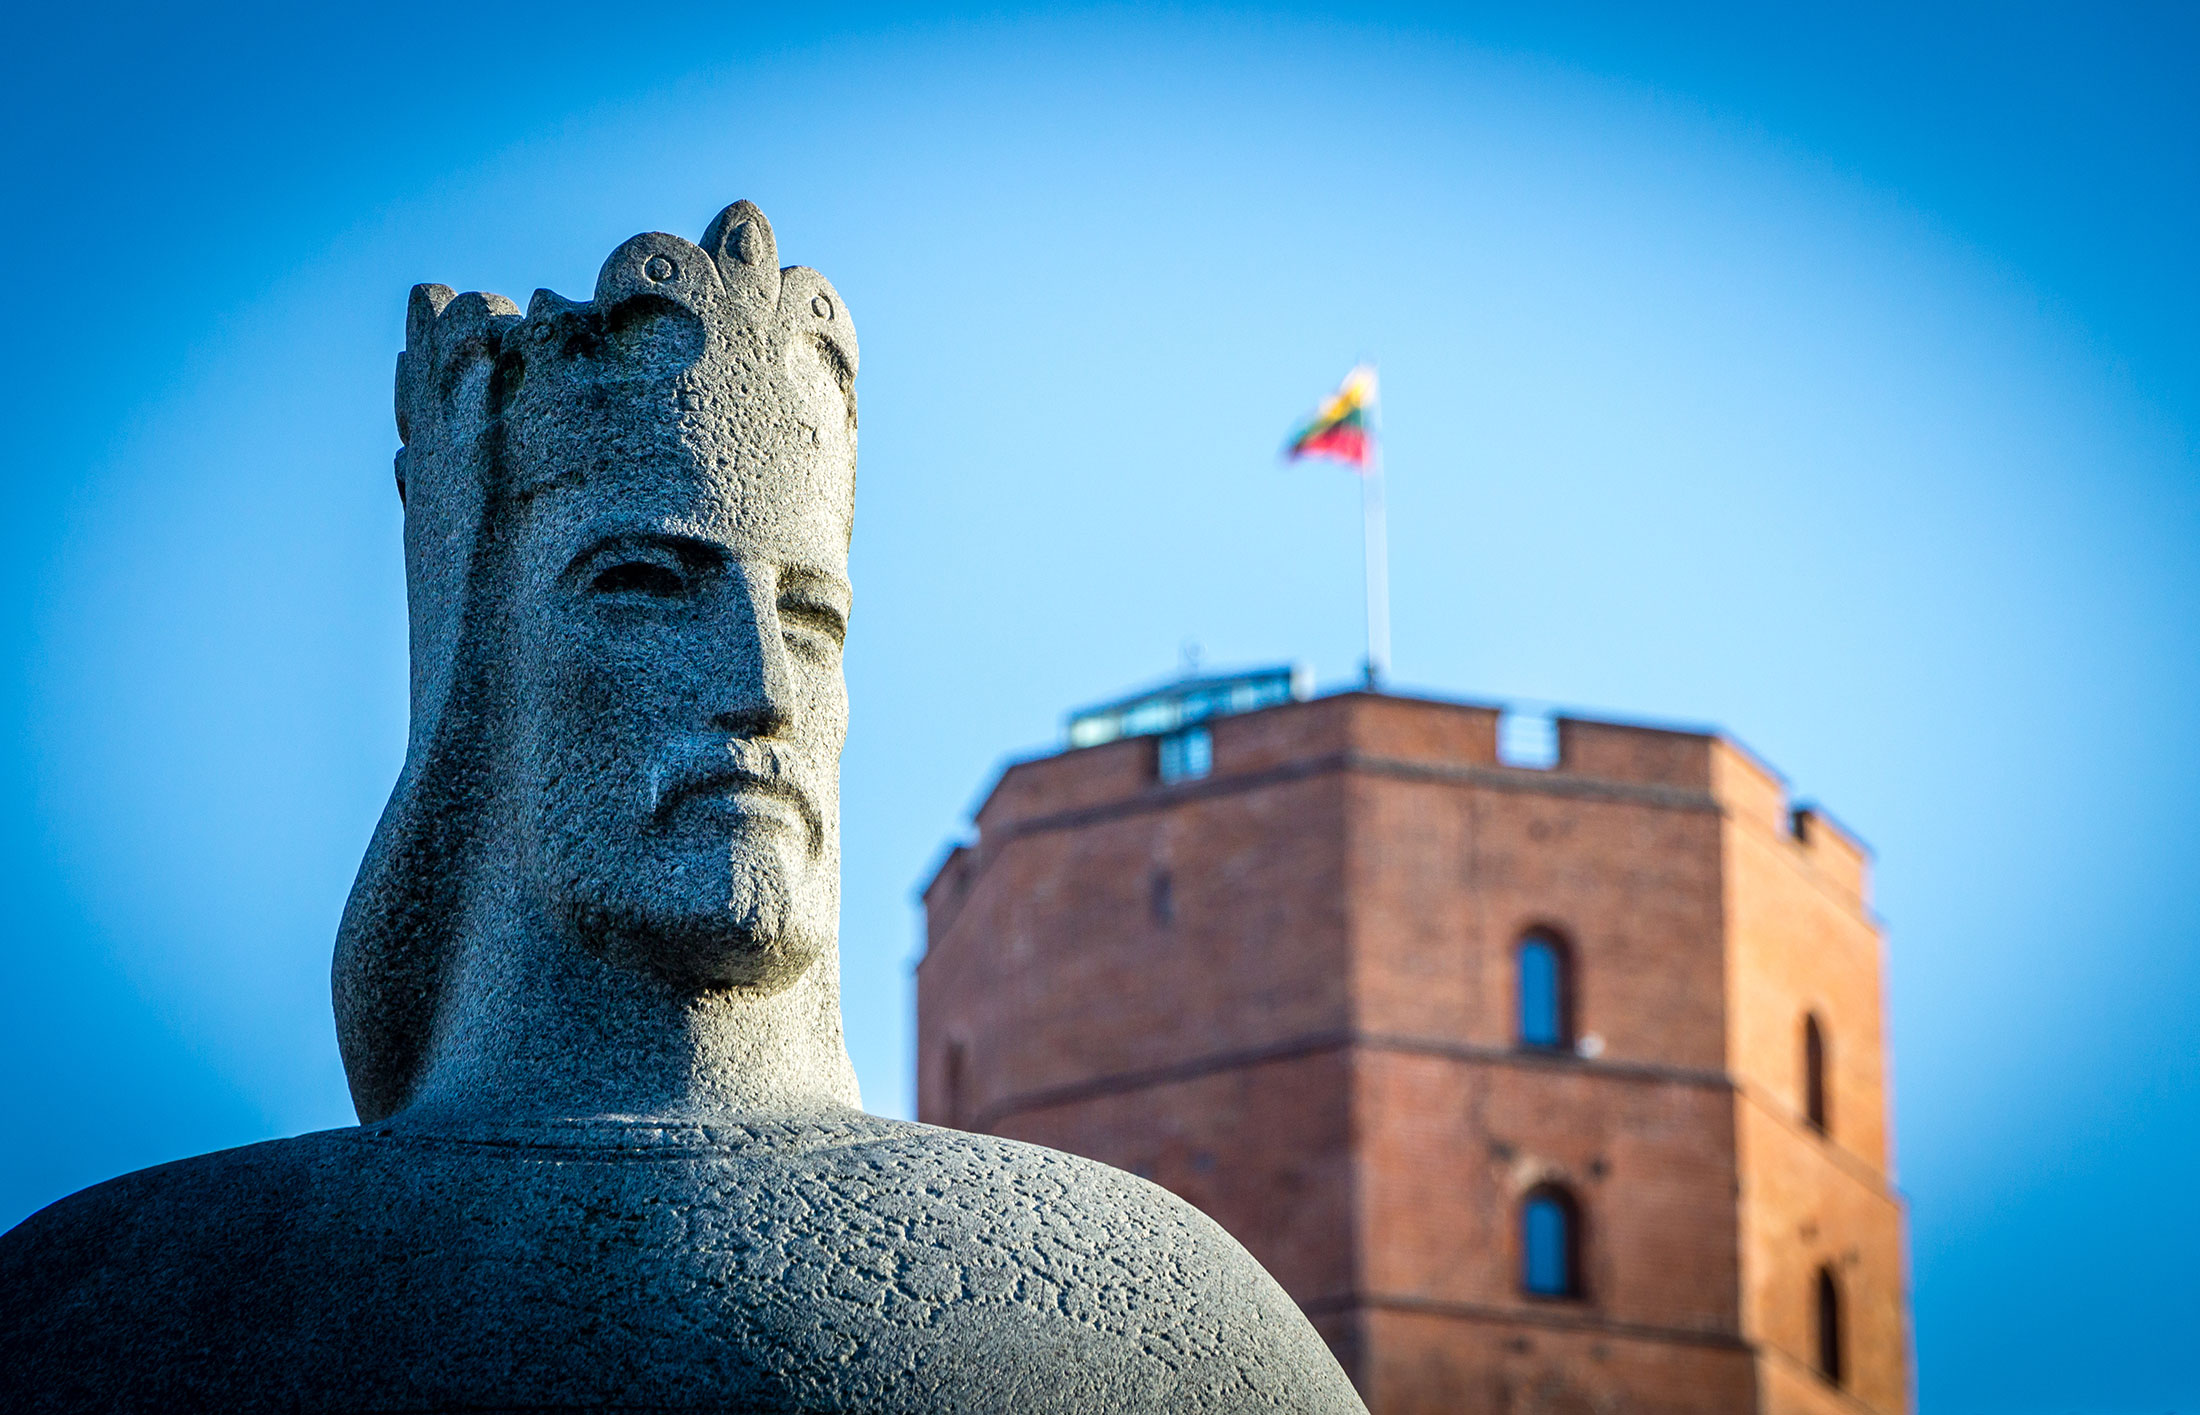 Mindaugas statue near Gediminas castle, Lithuania.